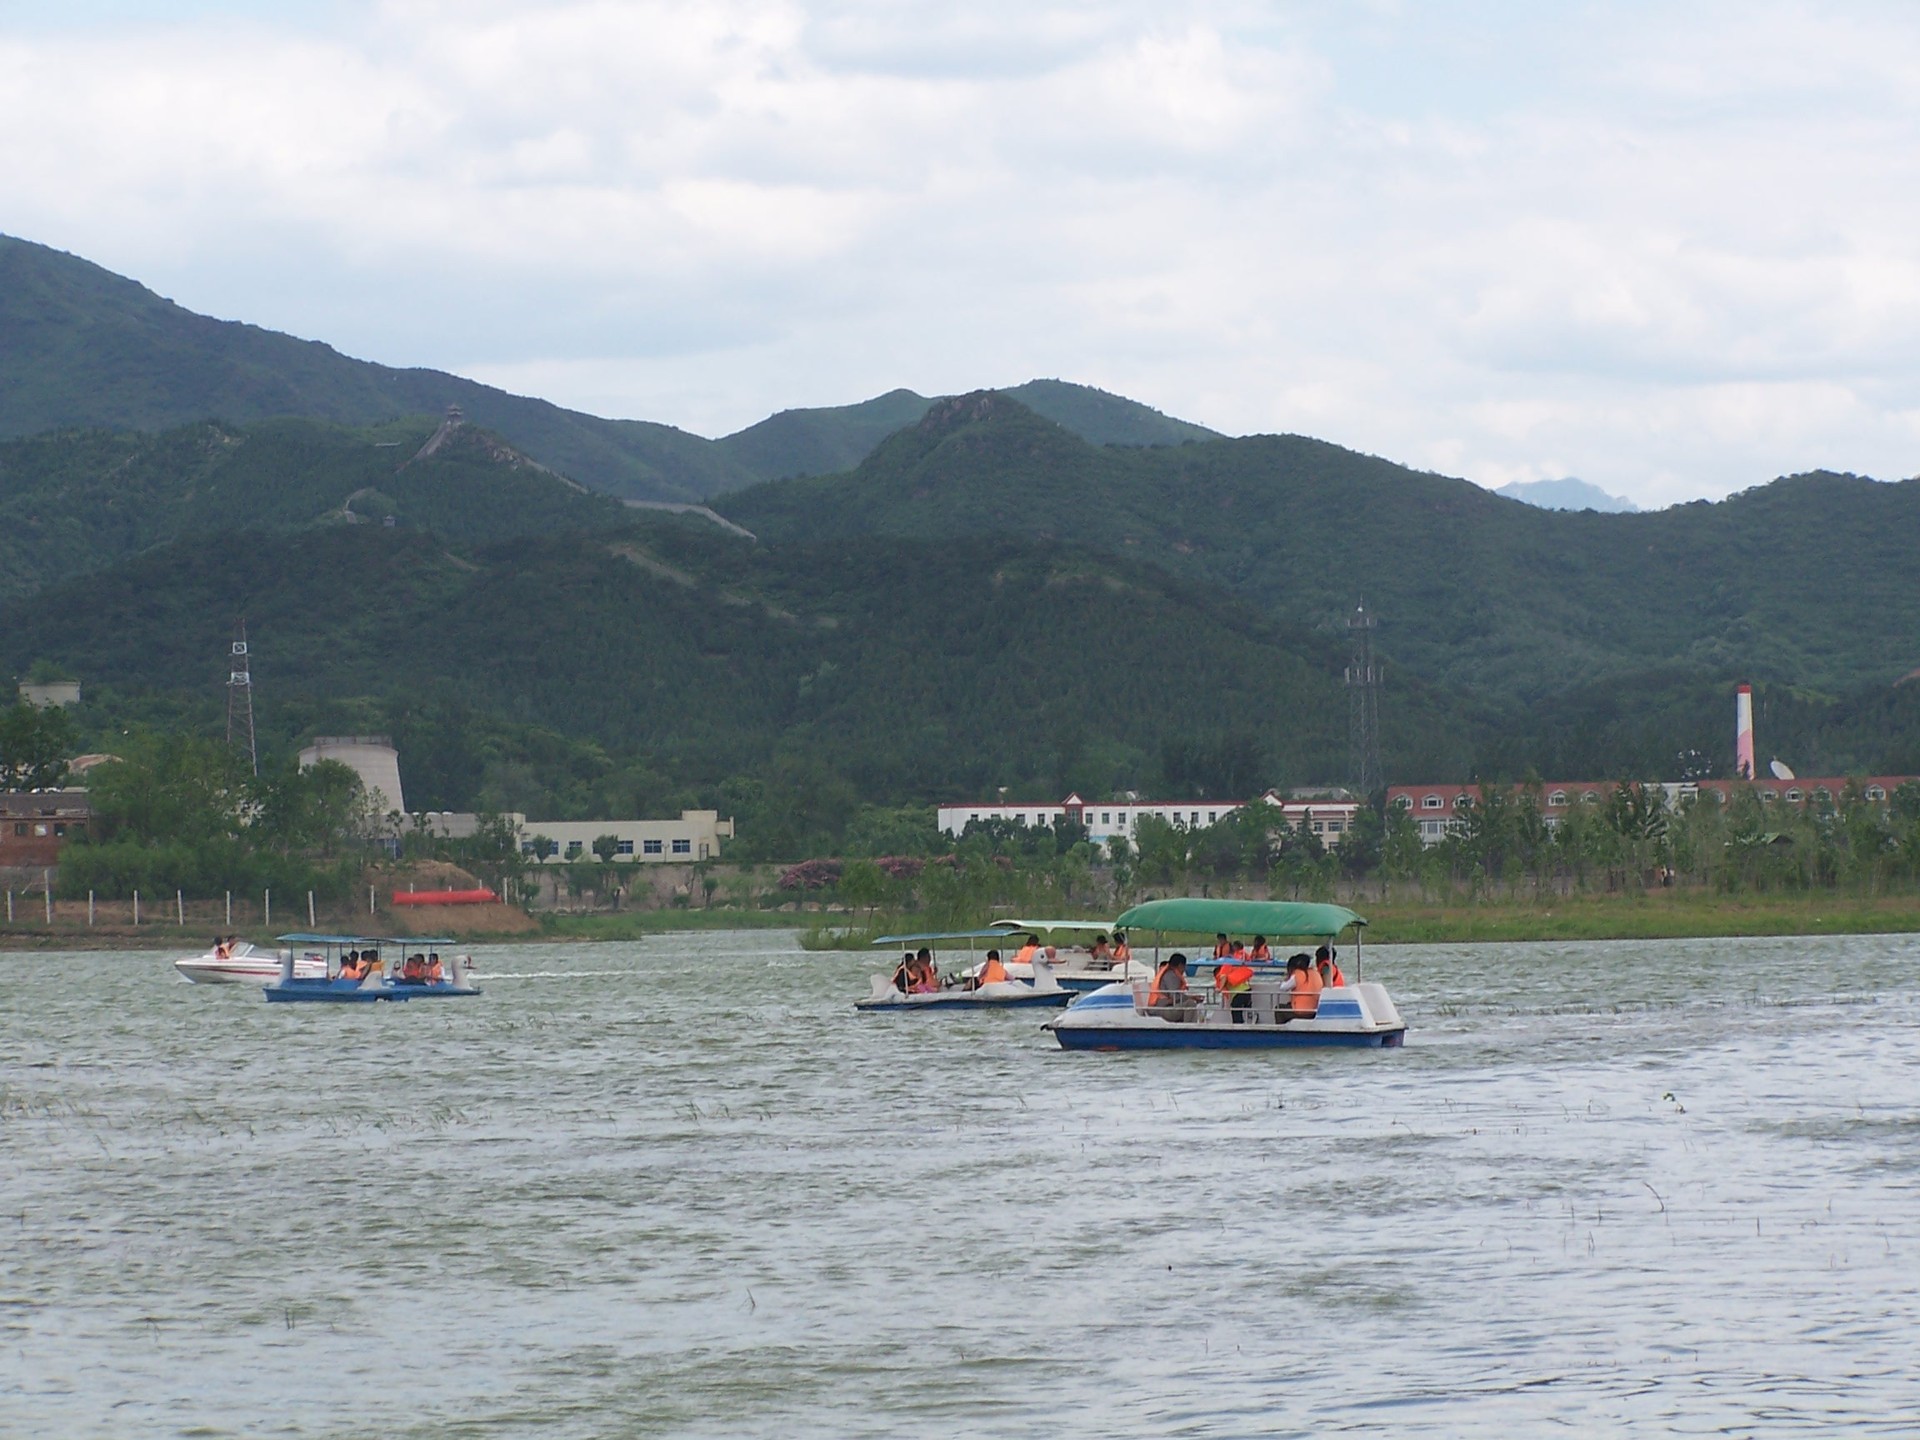 广州二人脚踏船 玻璃钢游览船 公园游湖适用 厂家直销